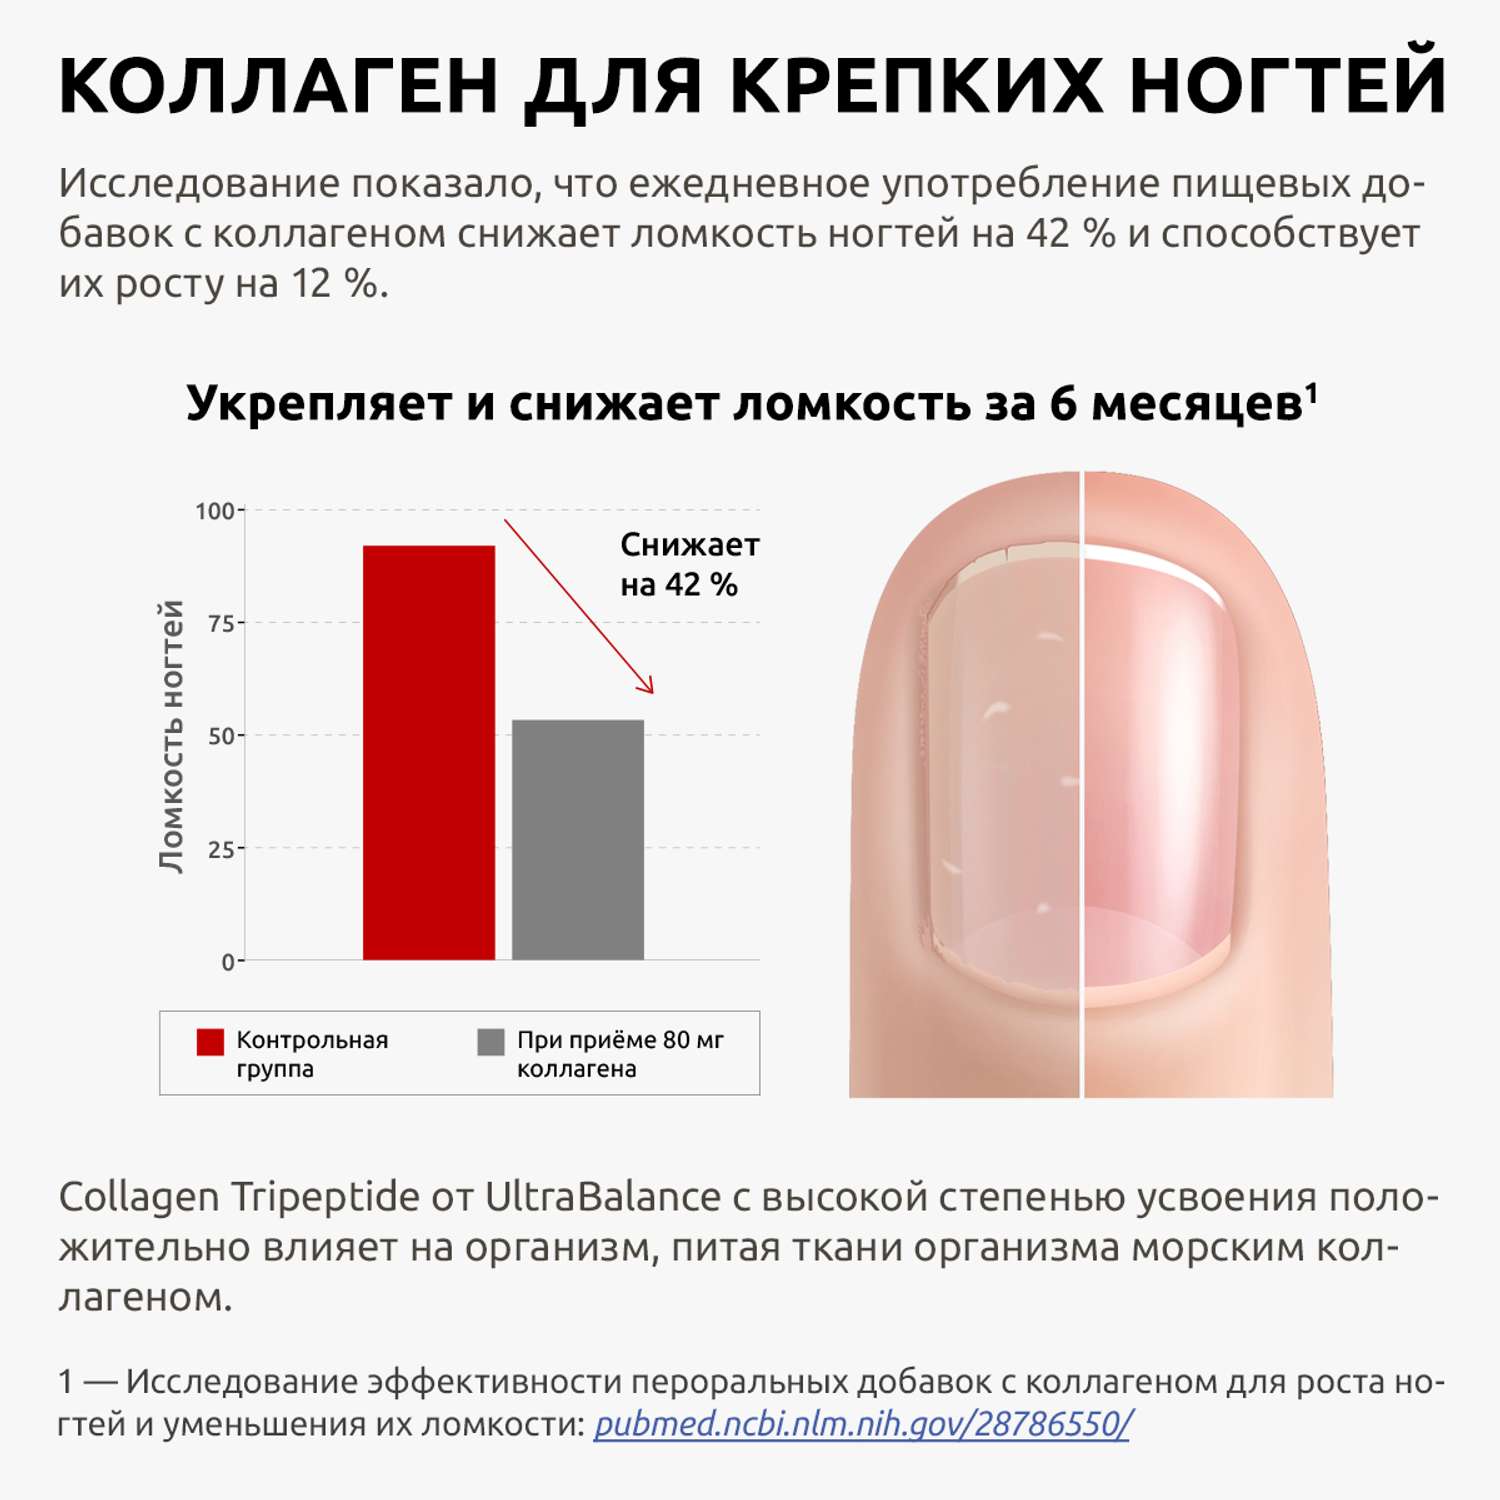 Витаминный комплекс для ногтей UltraBalance премиум набор для женщин и мужчин мультивитамины hair skin nails и коллаген порошок - фото 8